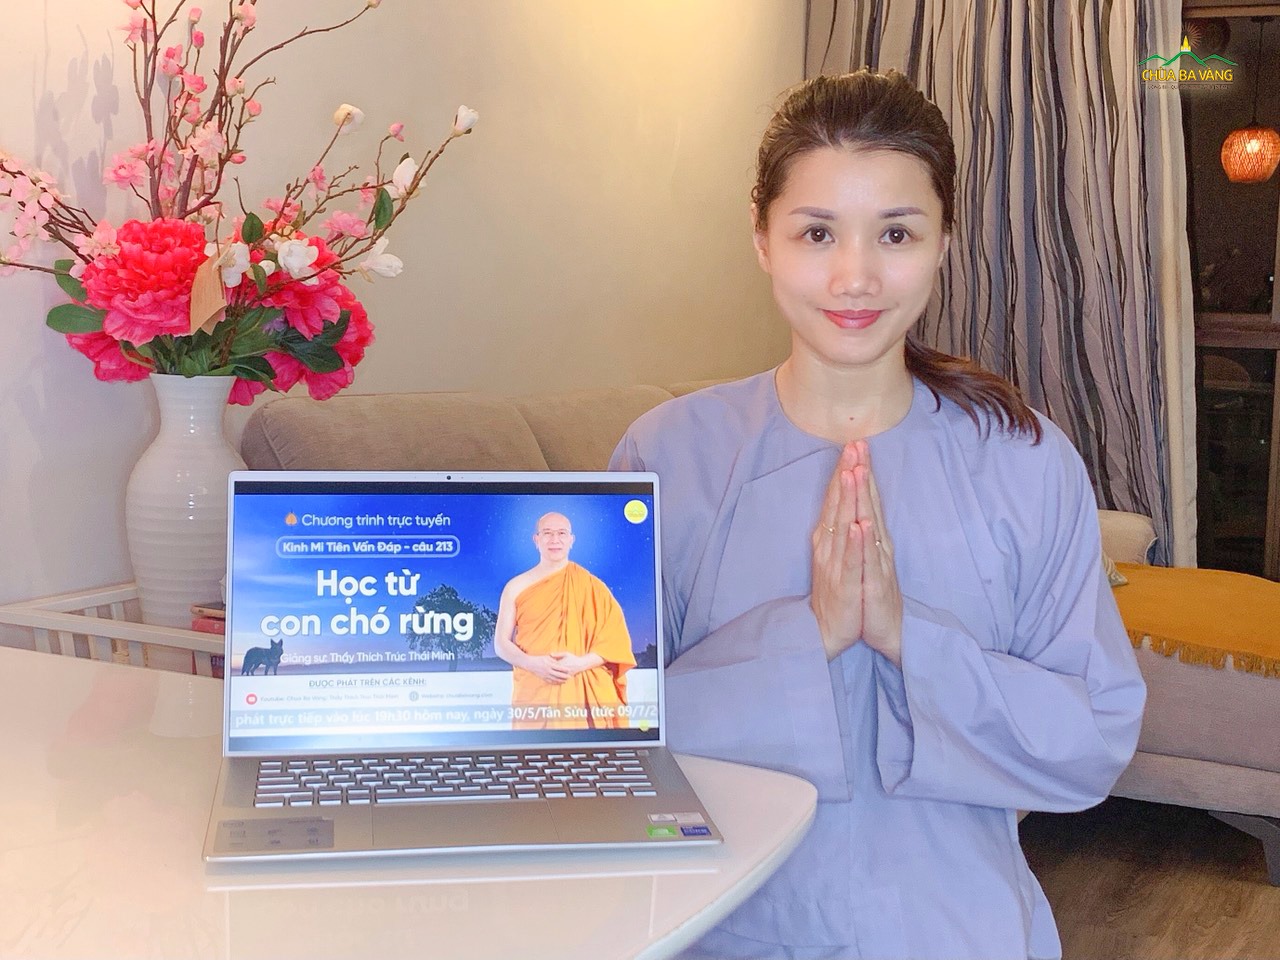 Phật tử xa xứ chùa Ba Vàng tại Singapore tham dự thời khóa thính Pháp ngày 30/5/Tân Sửu qua mạng trực tuyến